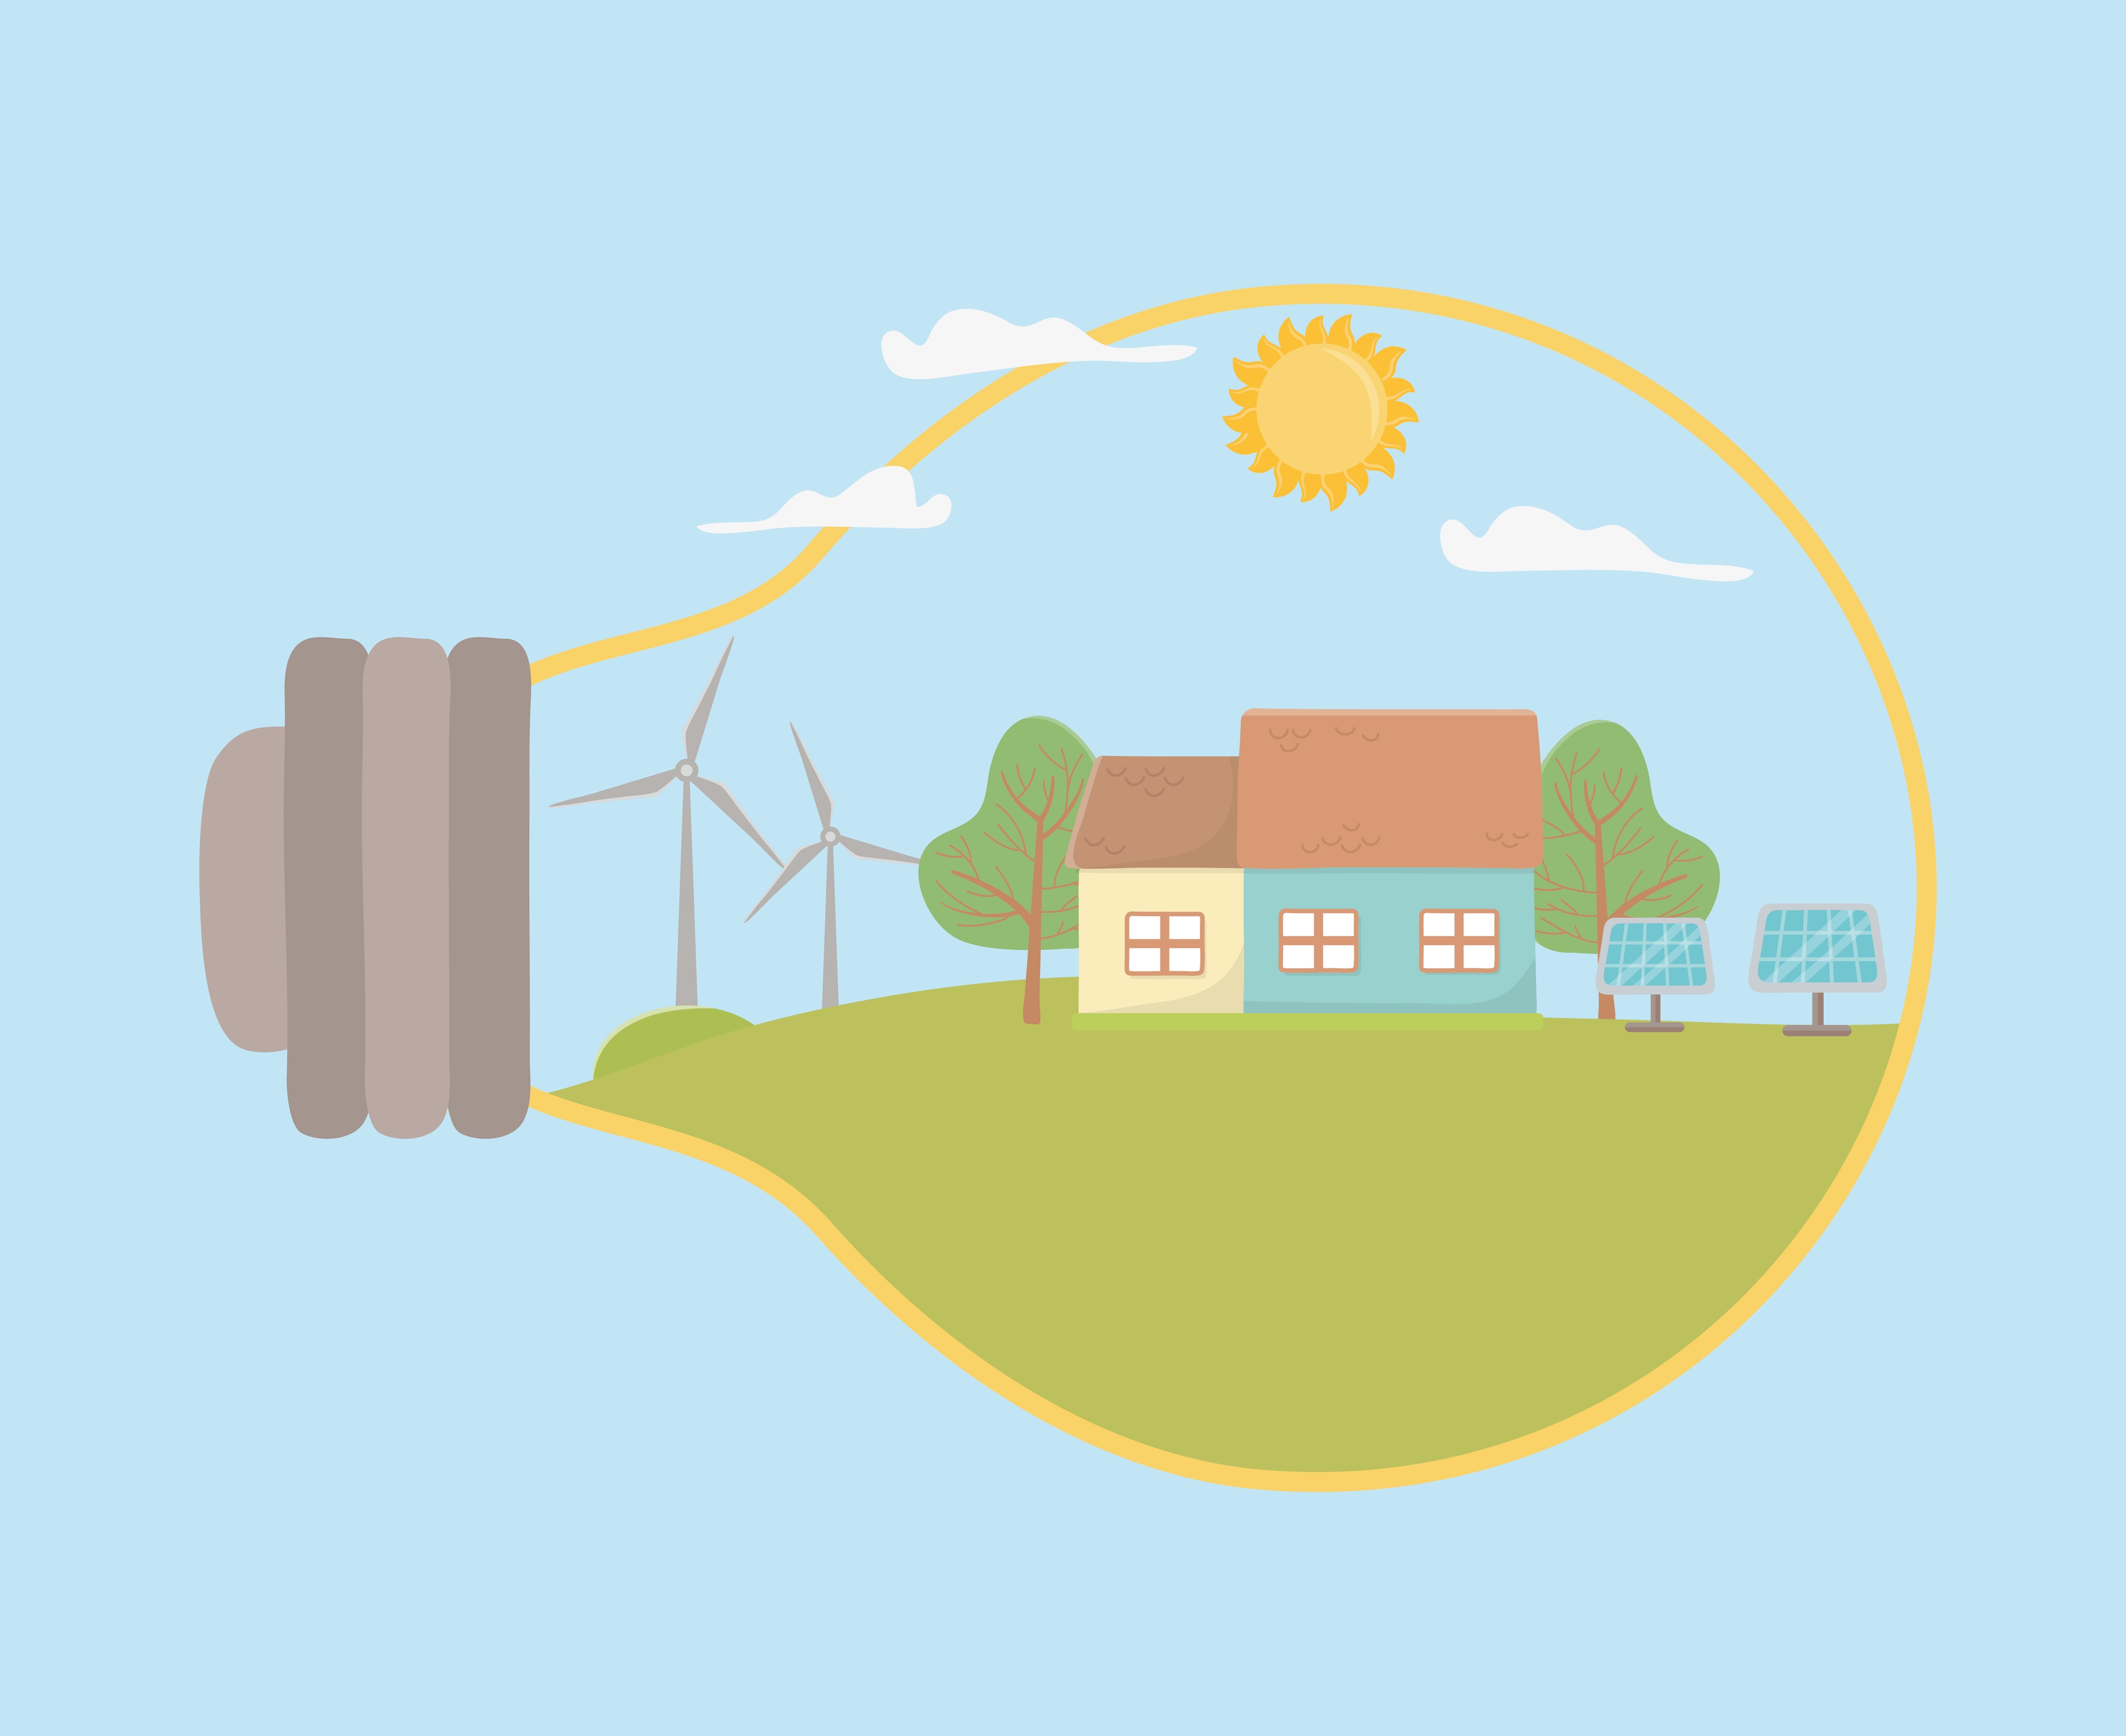 imagem de uma lâmpada com desenhos de placas solares e torre eólica simbolizando o uso da energia renovável